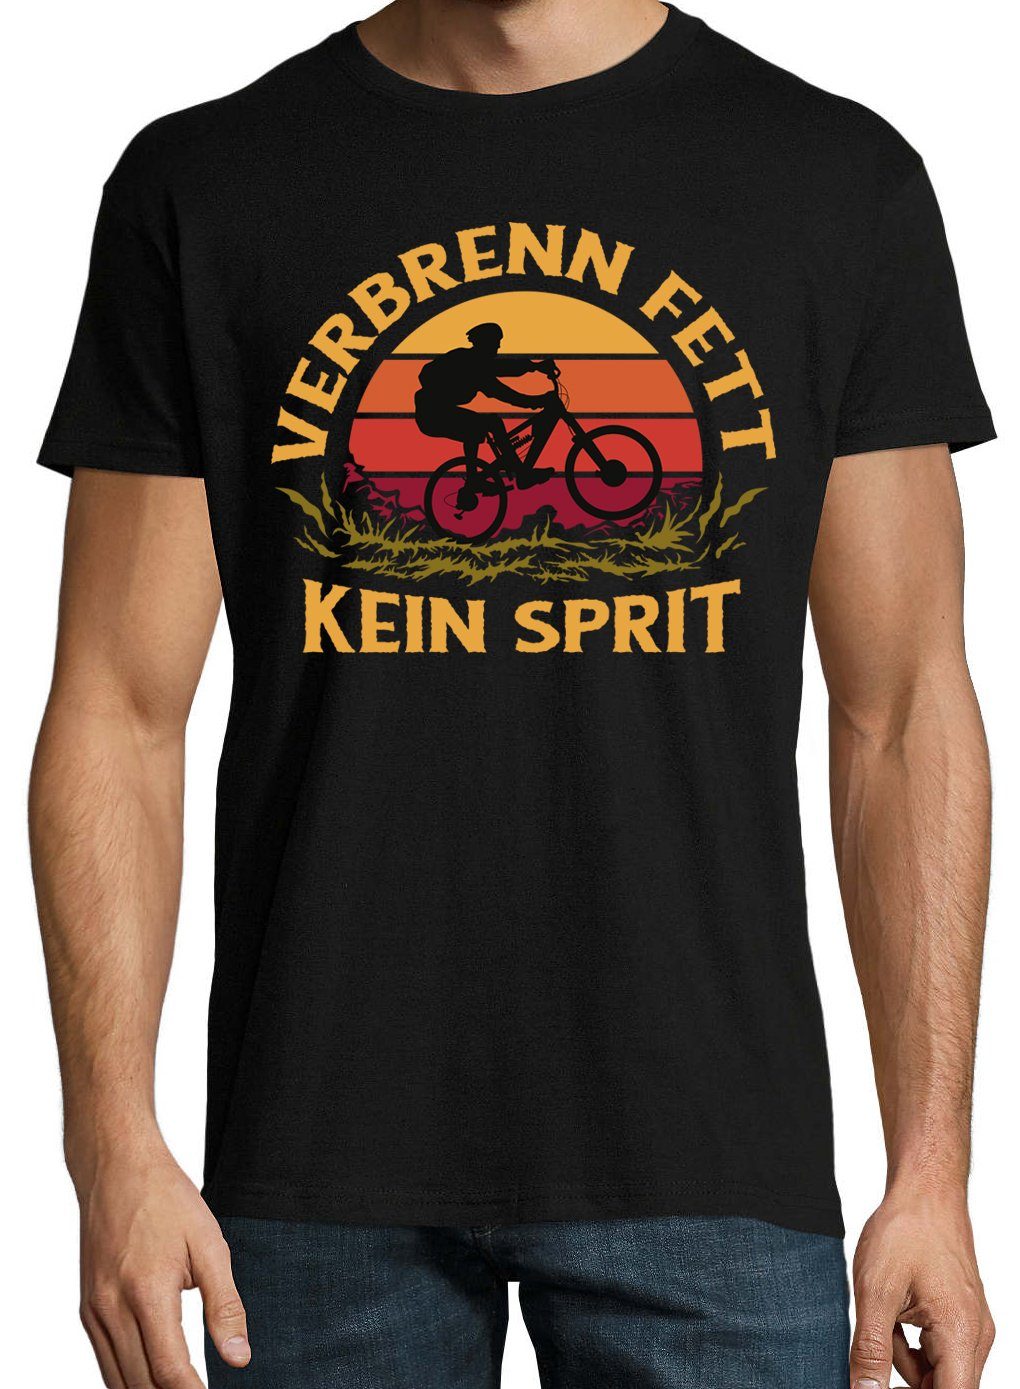 T-Shirt Schwarz lustigem mit Designz "VerbrennFett" T-Shirt Spruch Youth Herren